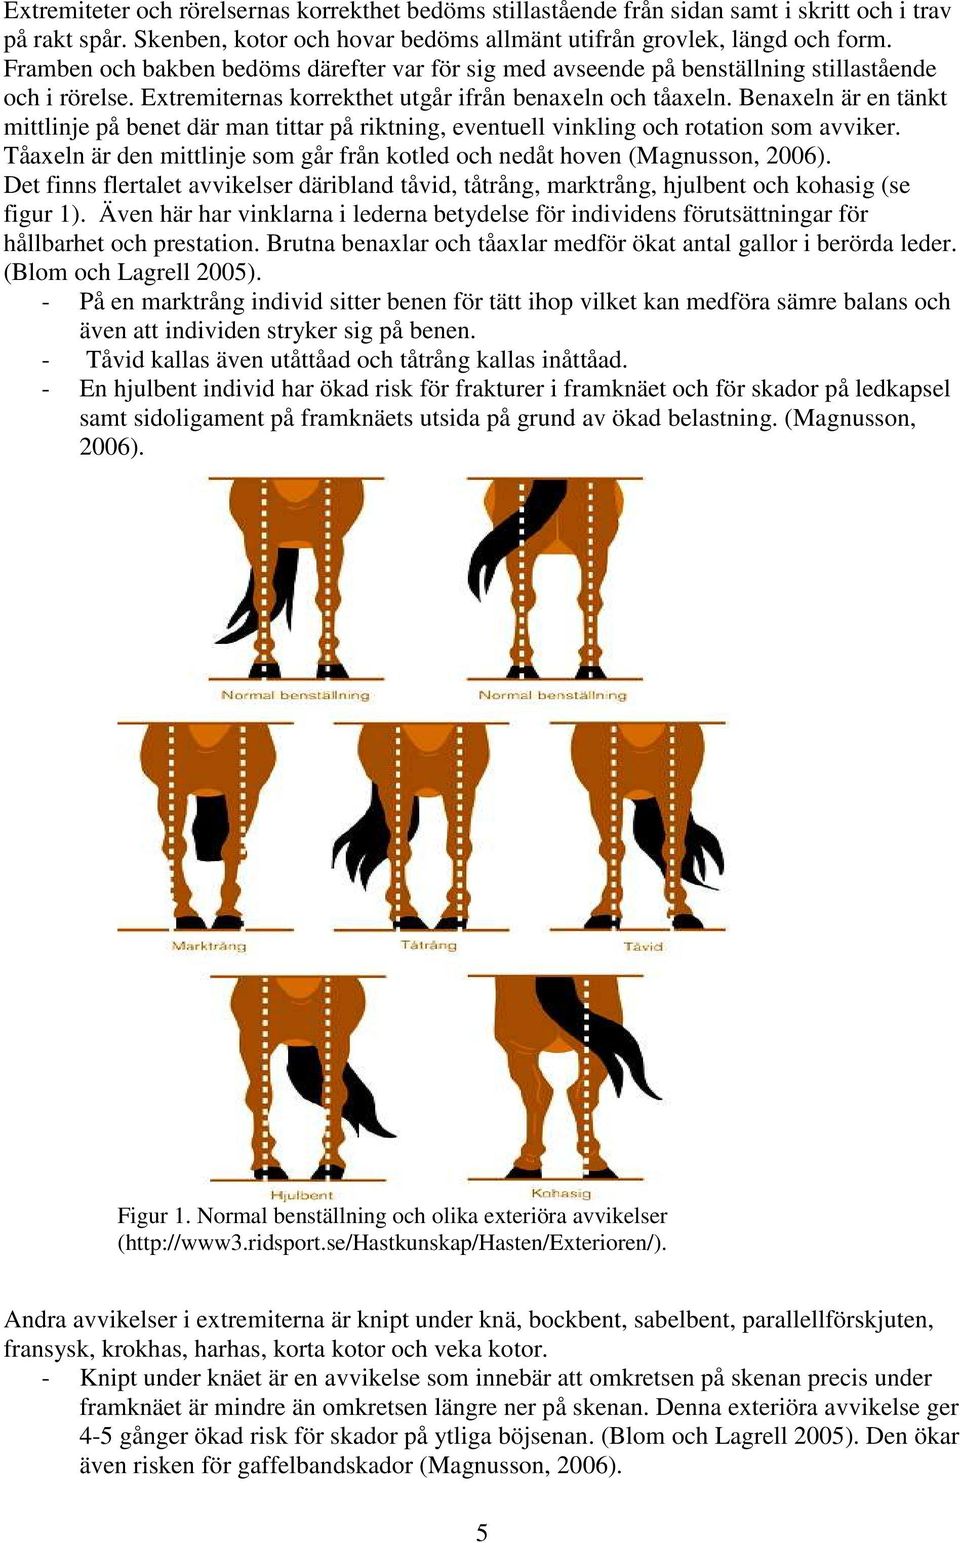 Benaxeln är en tänkt mittlinje på benet där man tittar på riktning, eventuell vinkling och rotation som avviker. Tåaxeln är den mittlinje som går från kotled och nedåt hoven (Magnusson, 2006).